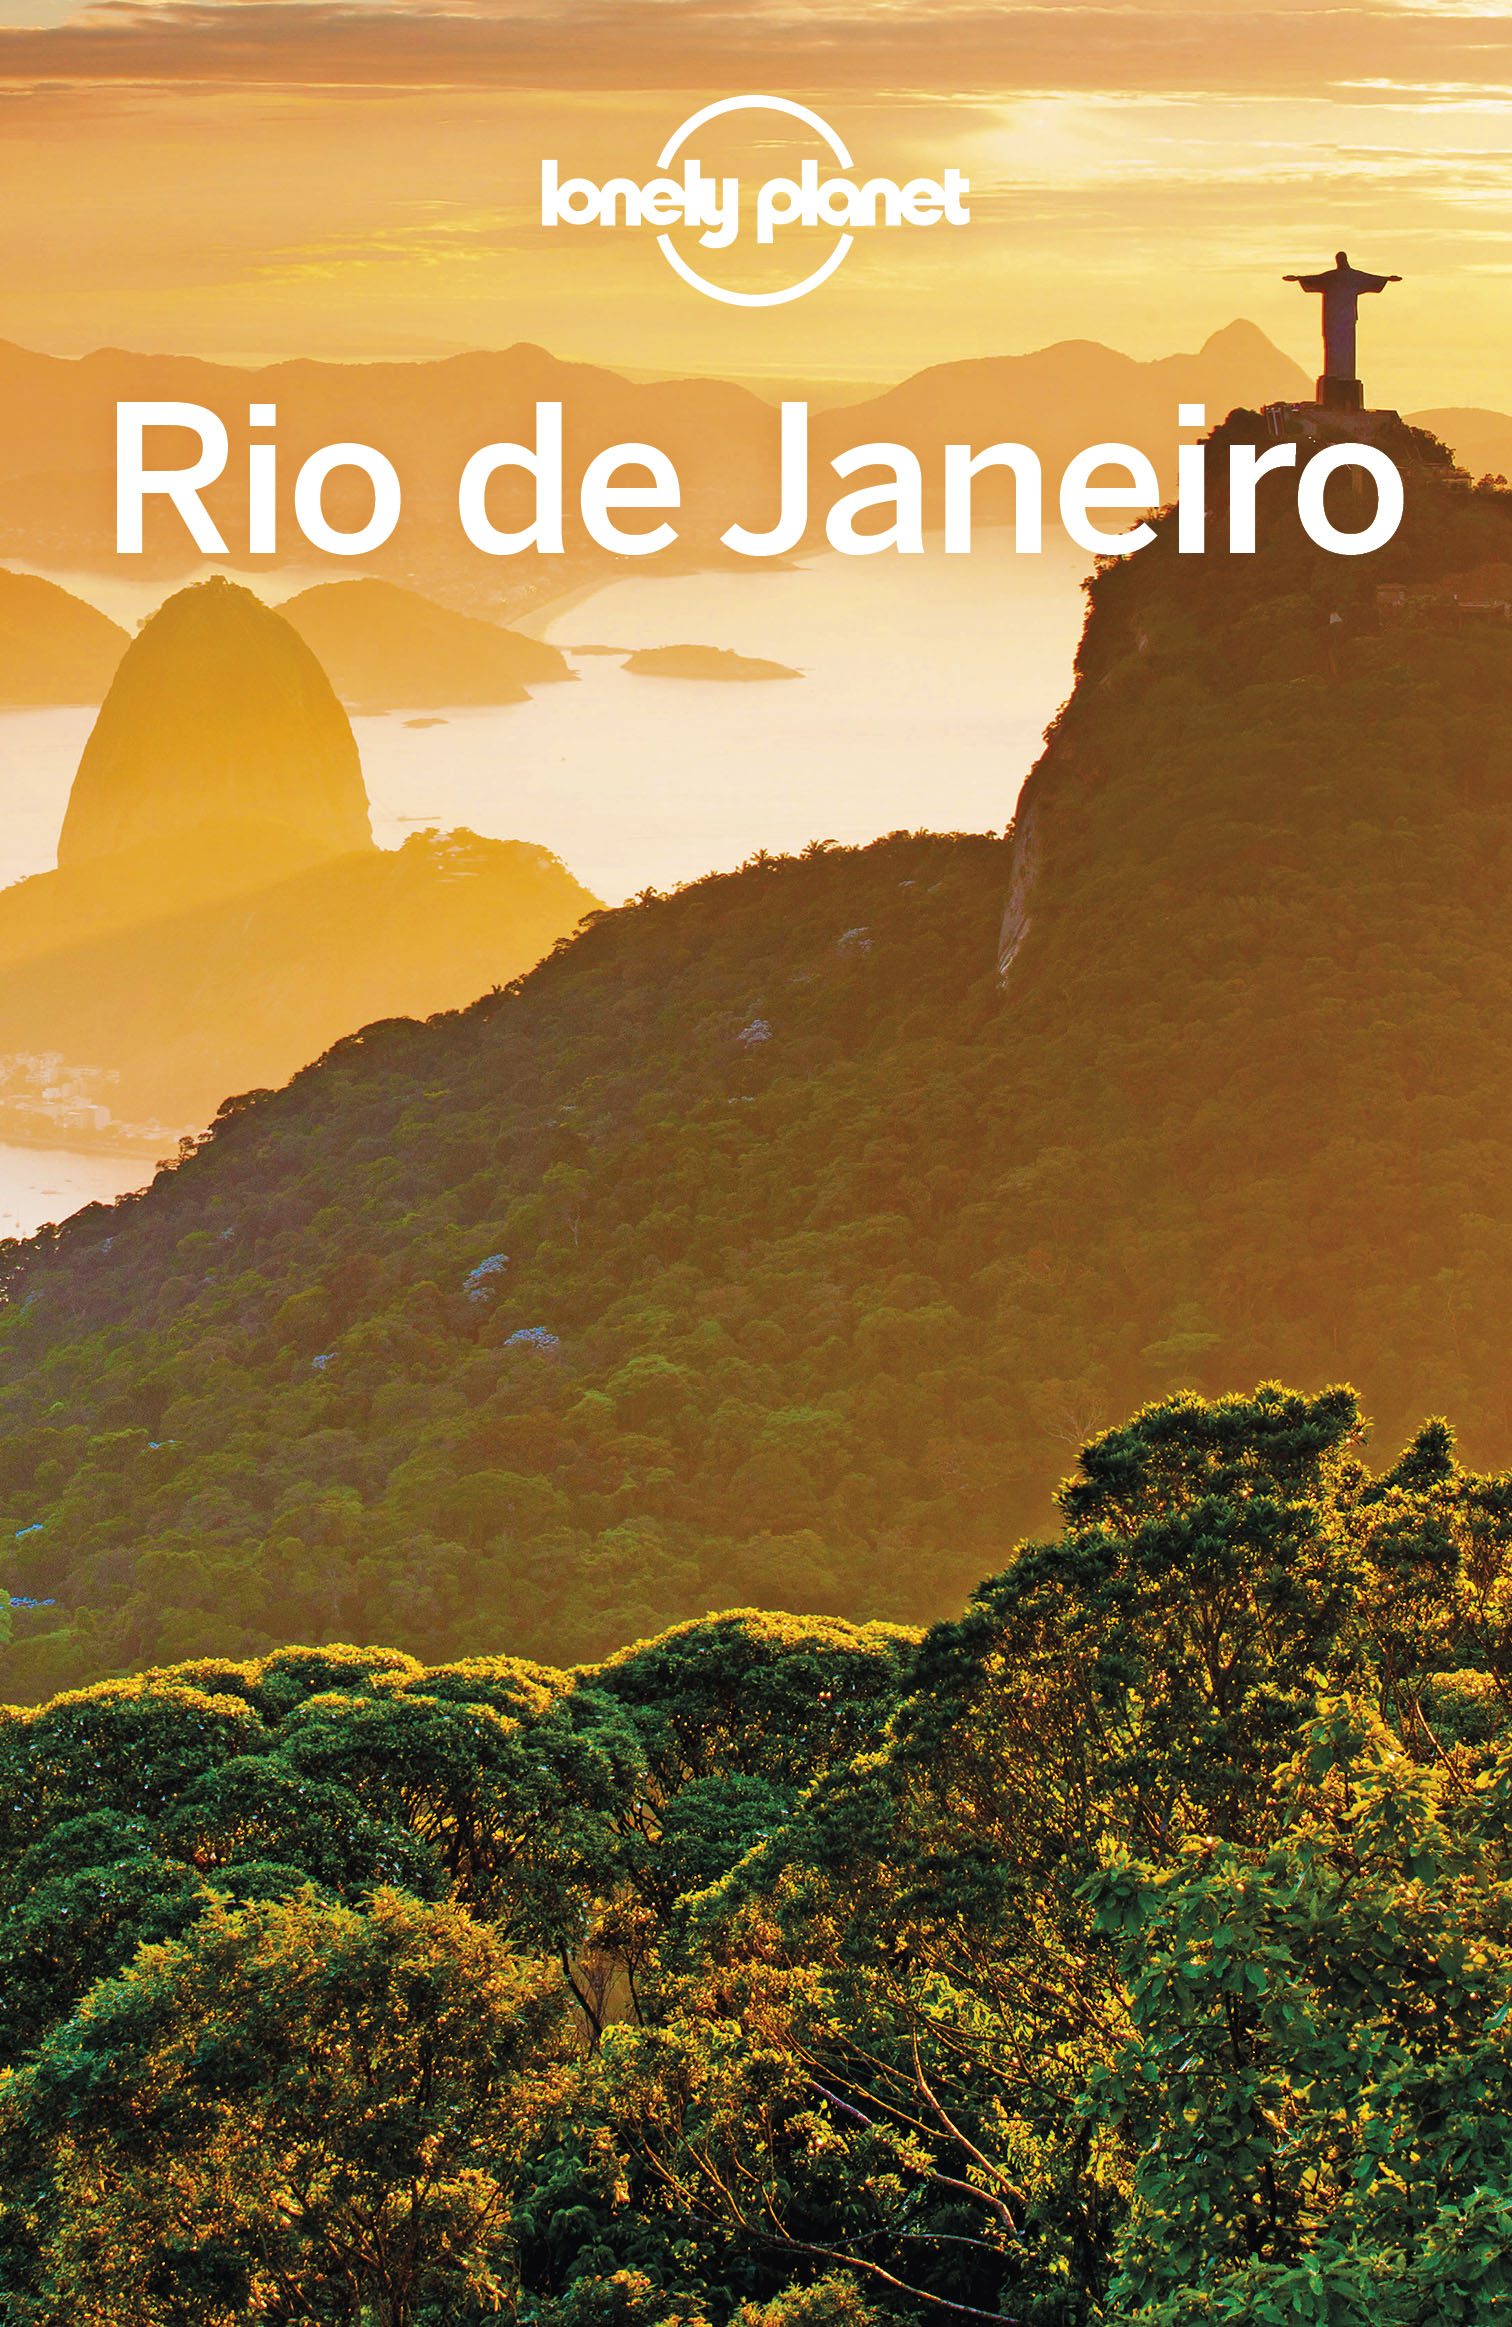 Lonely Planet Rio de Janeiro 10 - image 1